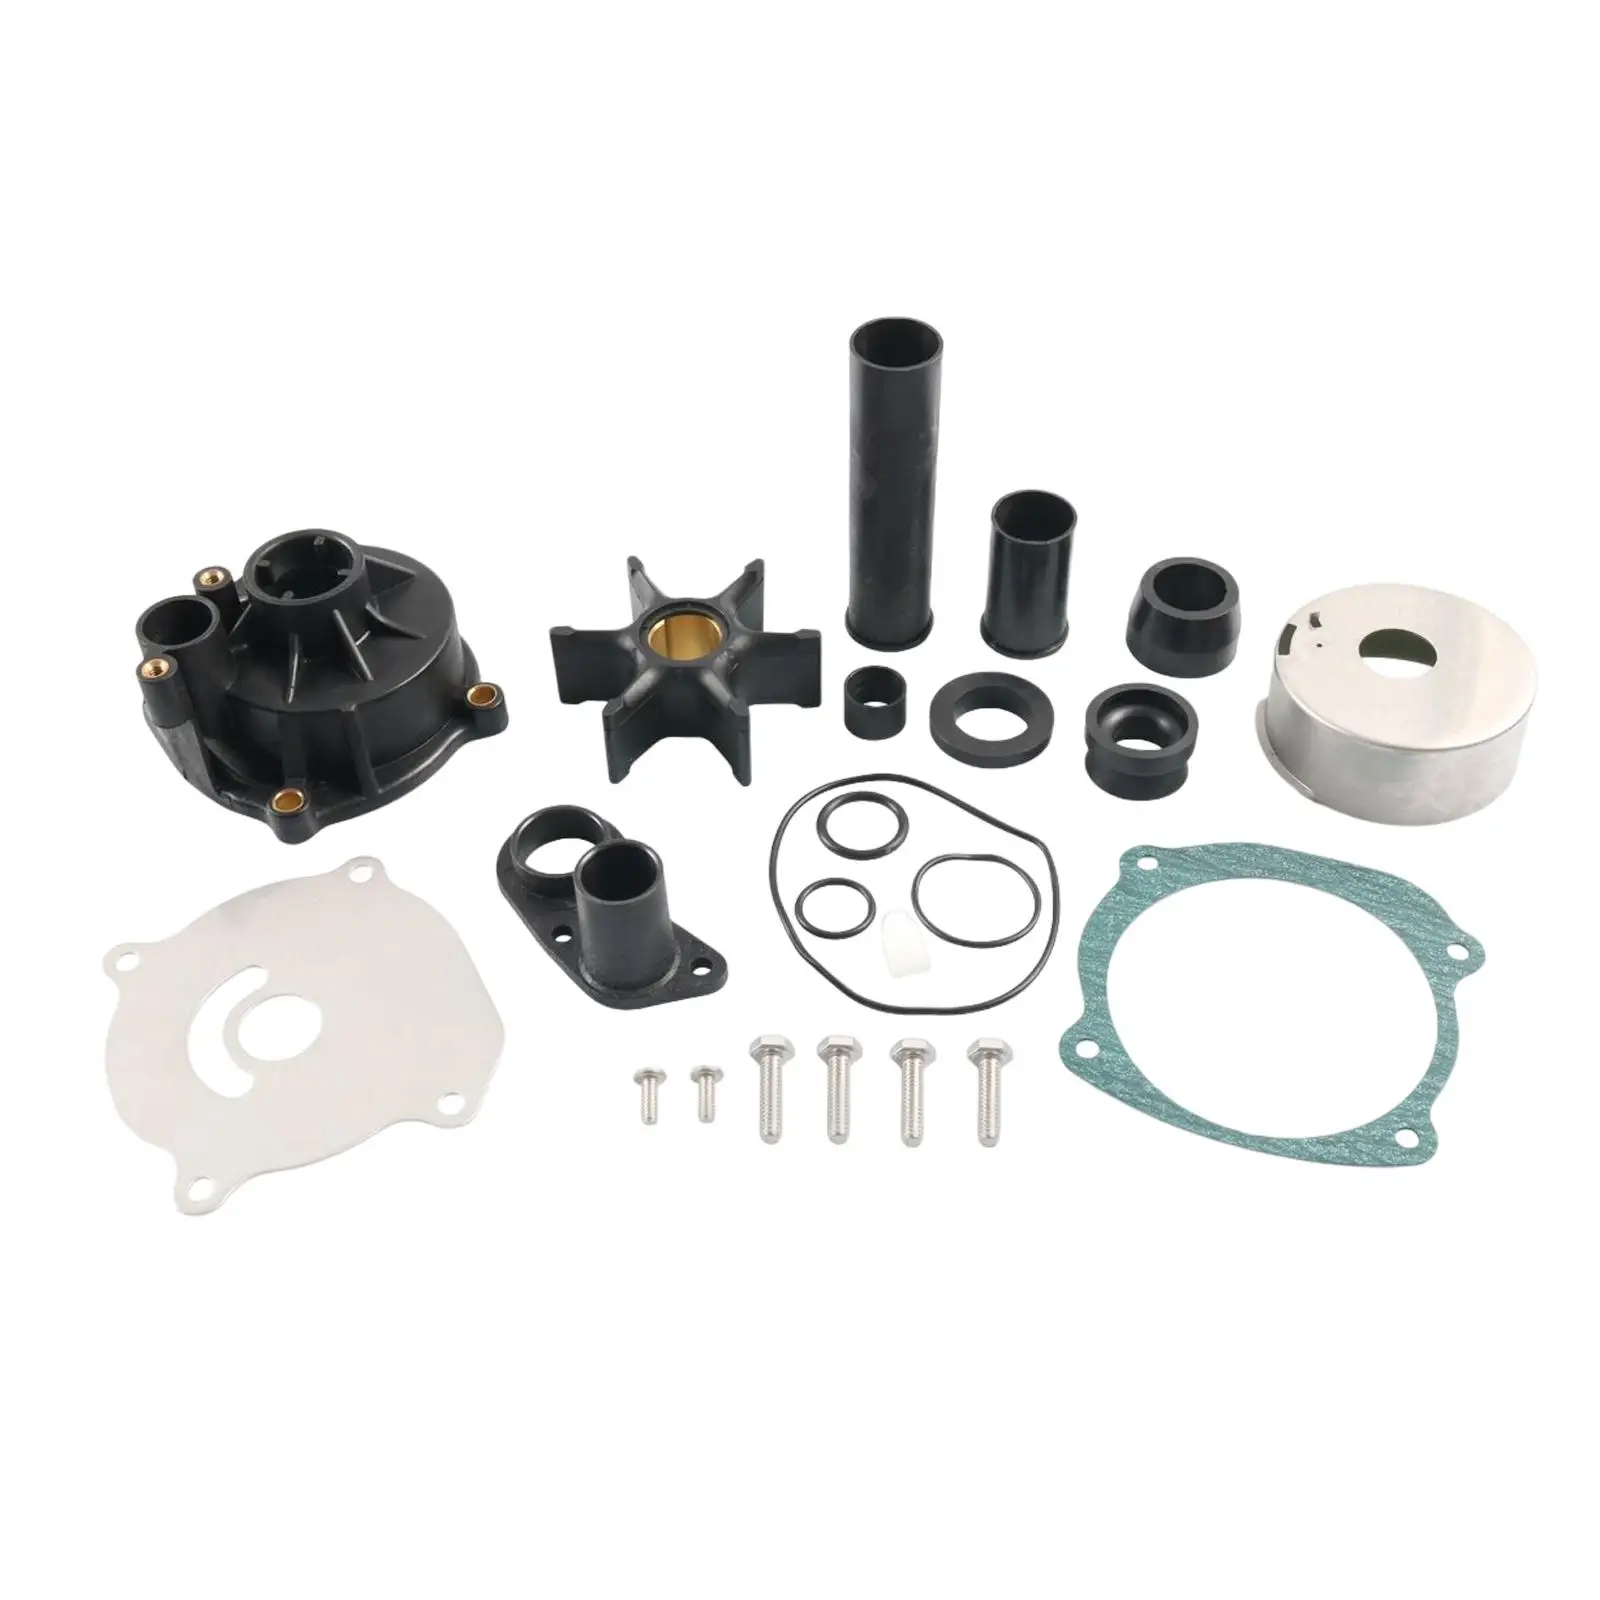 Water Pump Repair Kit for Johnson Evinrude V4 V6 V8 Easy to Install